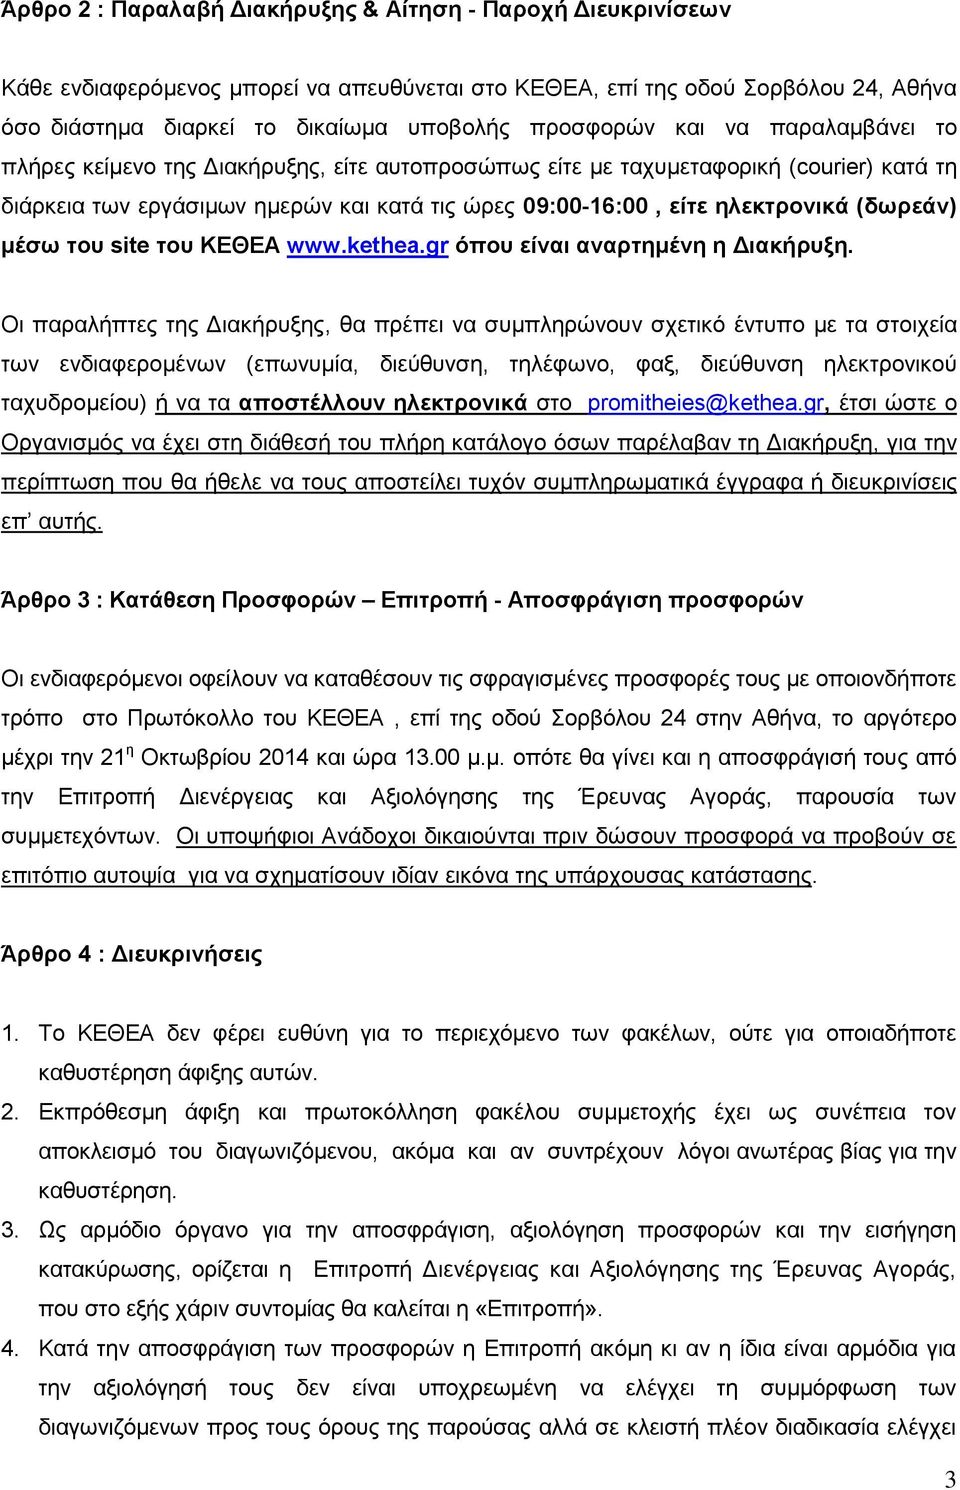 μέσω του site του ΚΕΘΕΑ www.kethea.gr όπου είναι αναρτημένη η Διακήρυξη.